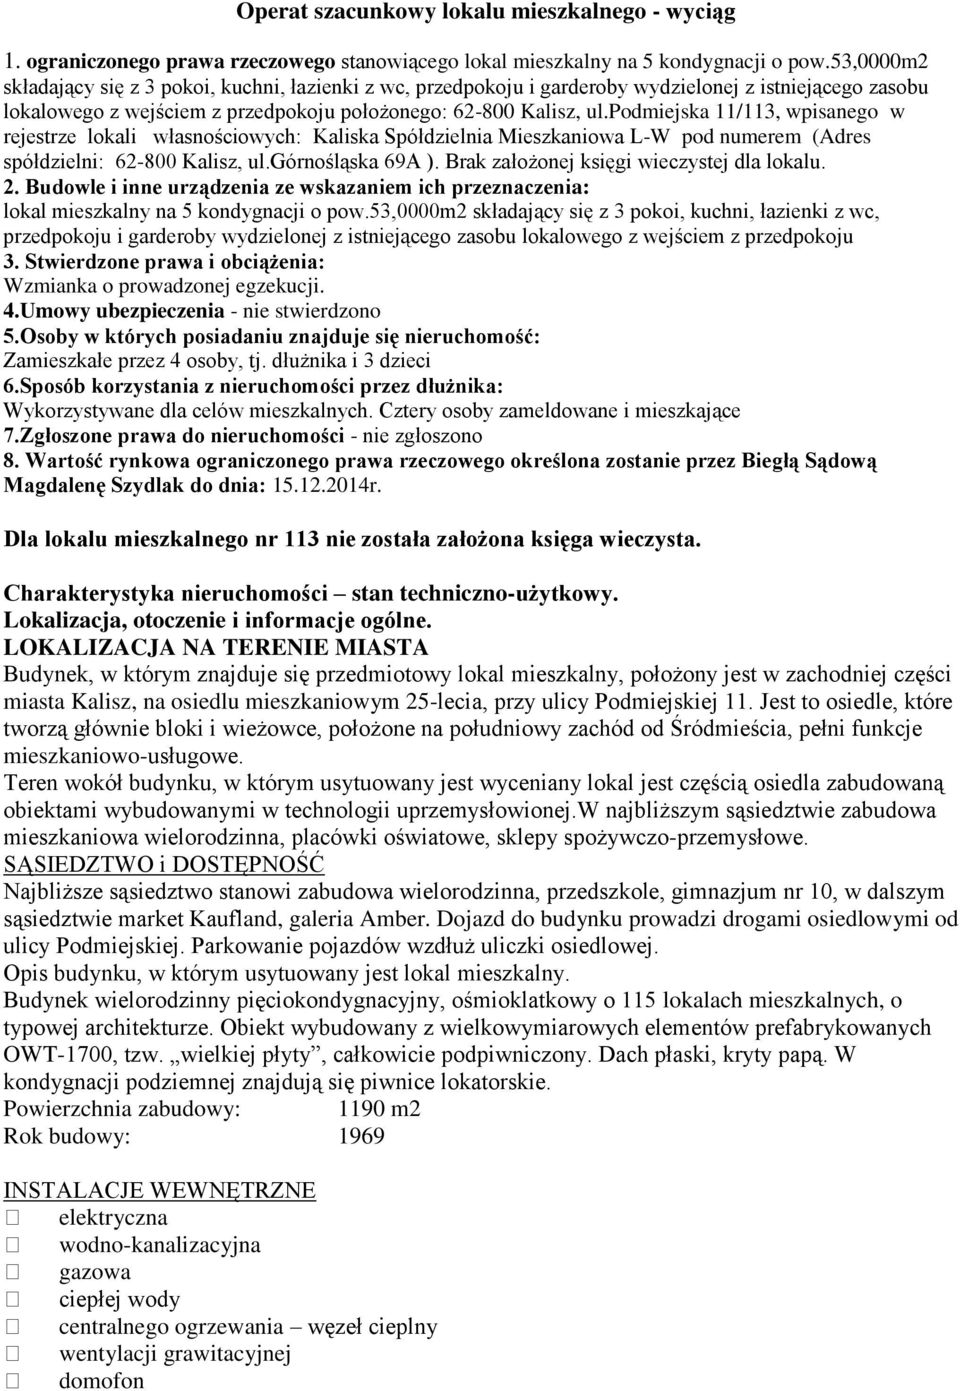 podmiejska 11/113, wpisanego w rejestrze lokali własnościowych: Kaliska Spółdzielnia Mieszkaniowa L-W pod numerem (Adres spółdzielni: 62-800 Kalisz, ul.górnośląska 69A ).